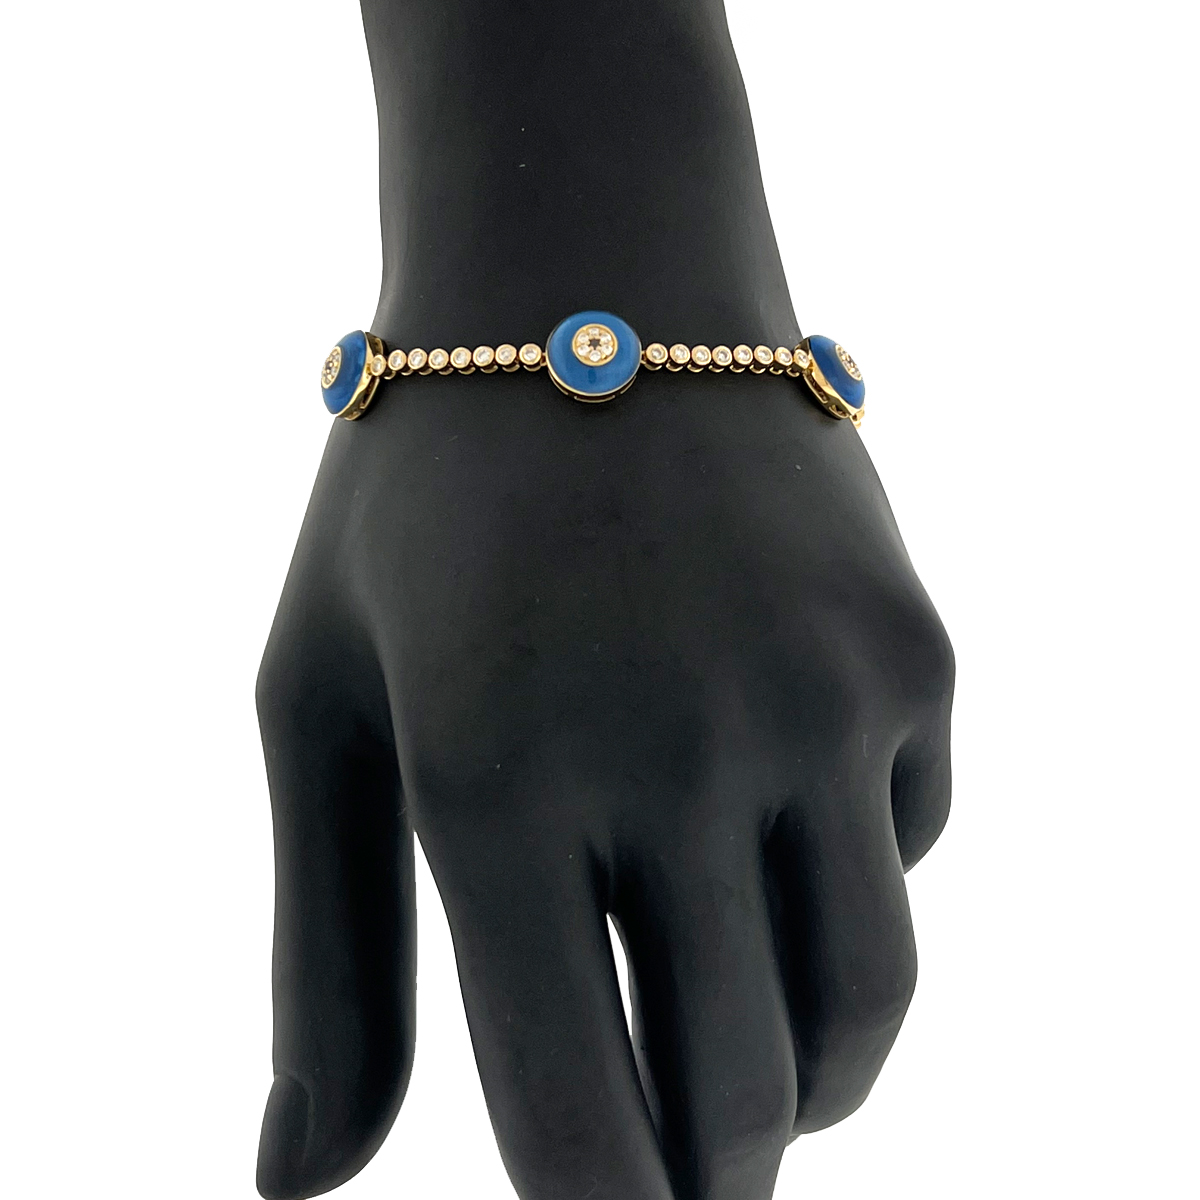 18k LV Style Diamond Bracelet